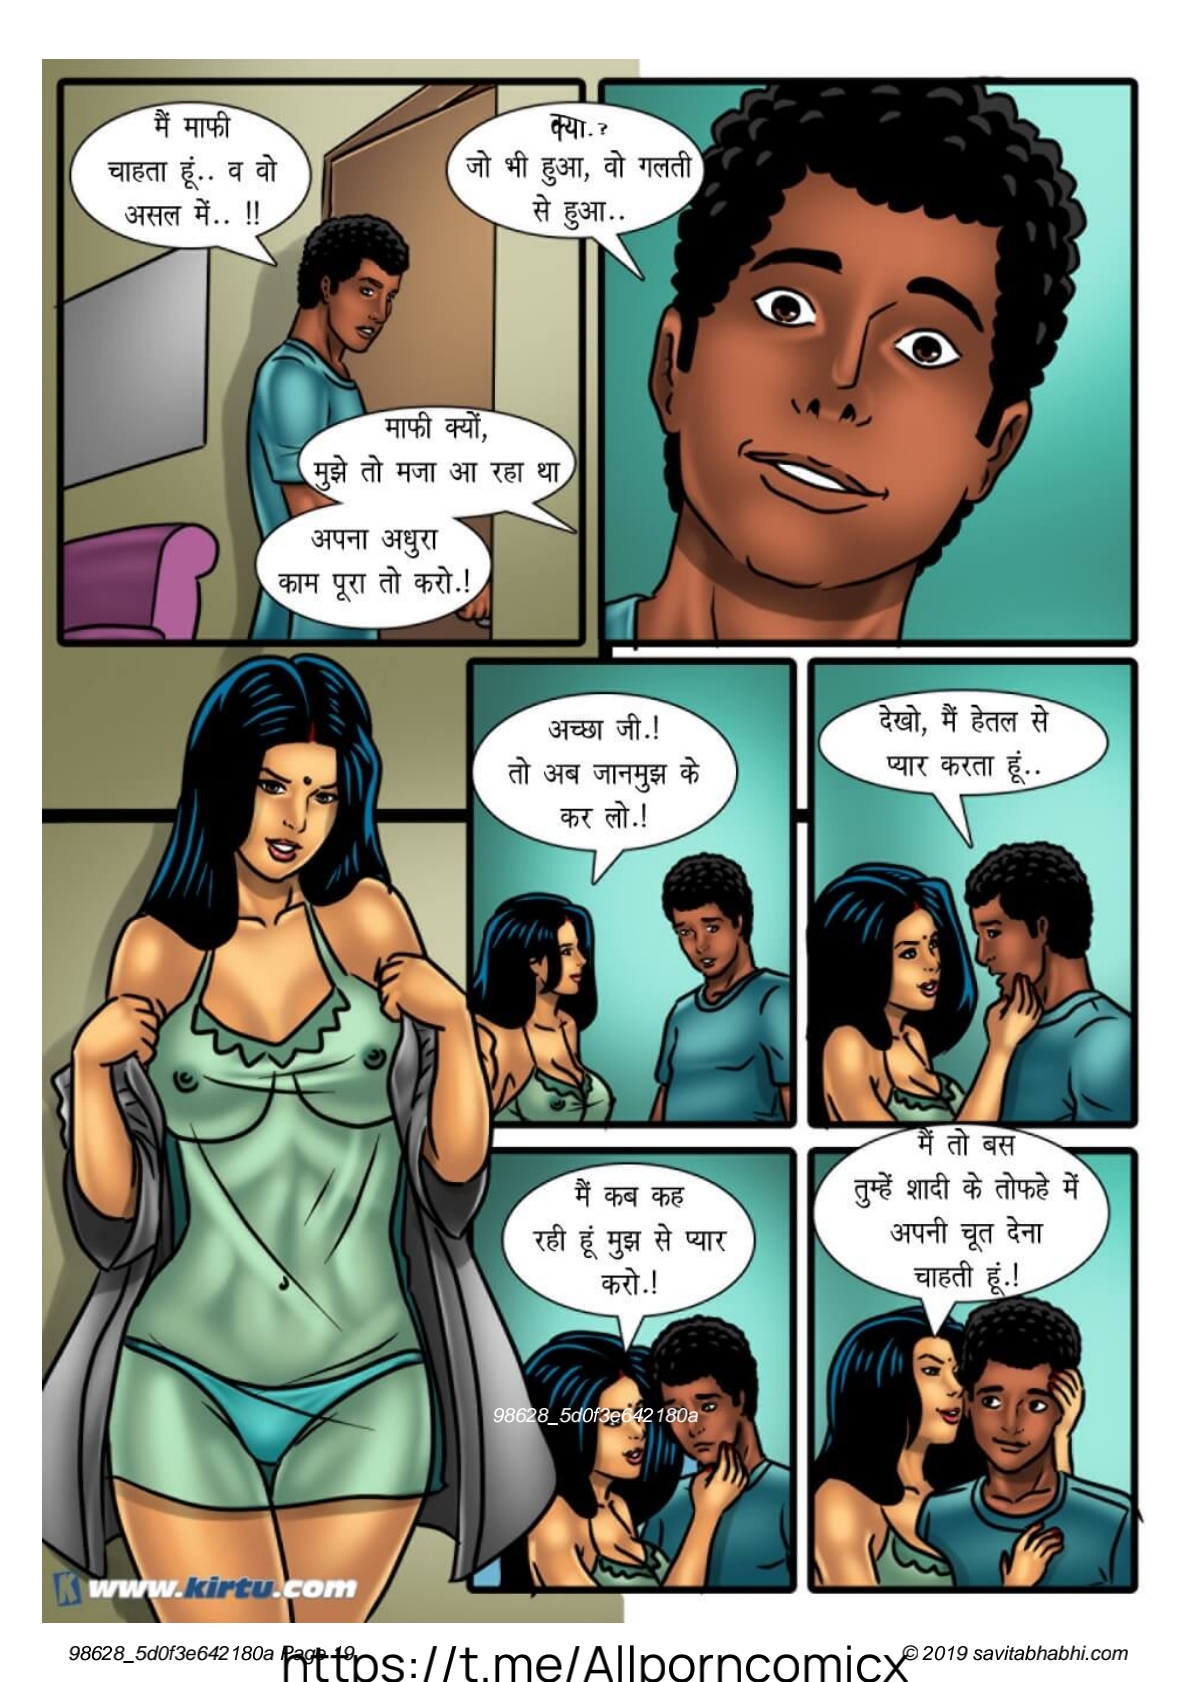 savita bhabhi, savita bhabhi comics, Savita Bhabhi Cartoon, porn comics, .....